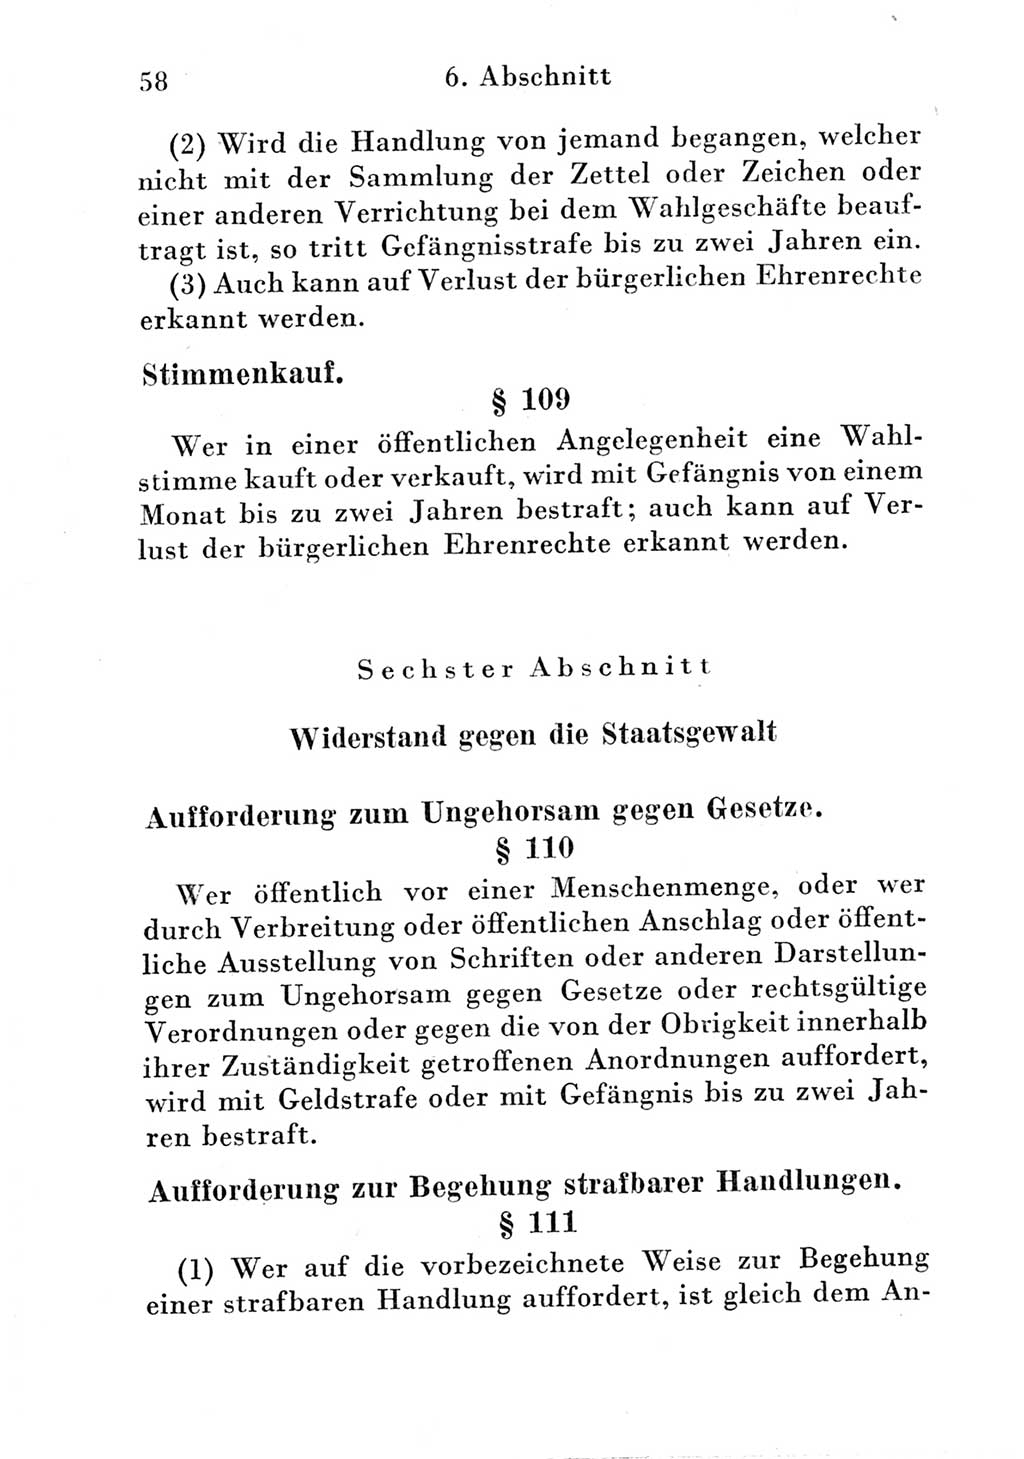 Strafgesetzbuch (StGB) und andere Strafgesetze [Deutsche Demokratische Republik (DDR)] 1951, Seite 58 (StGB Strafges. DDR 1951, S. 58)